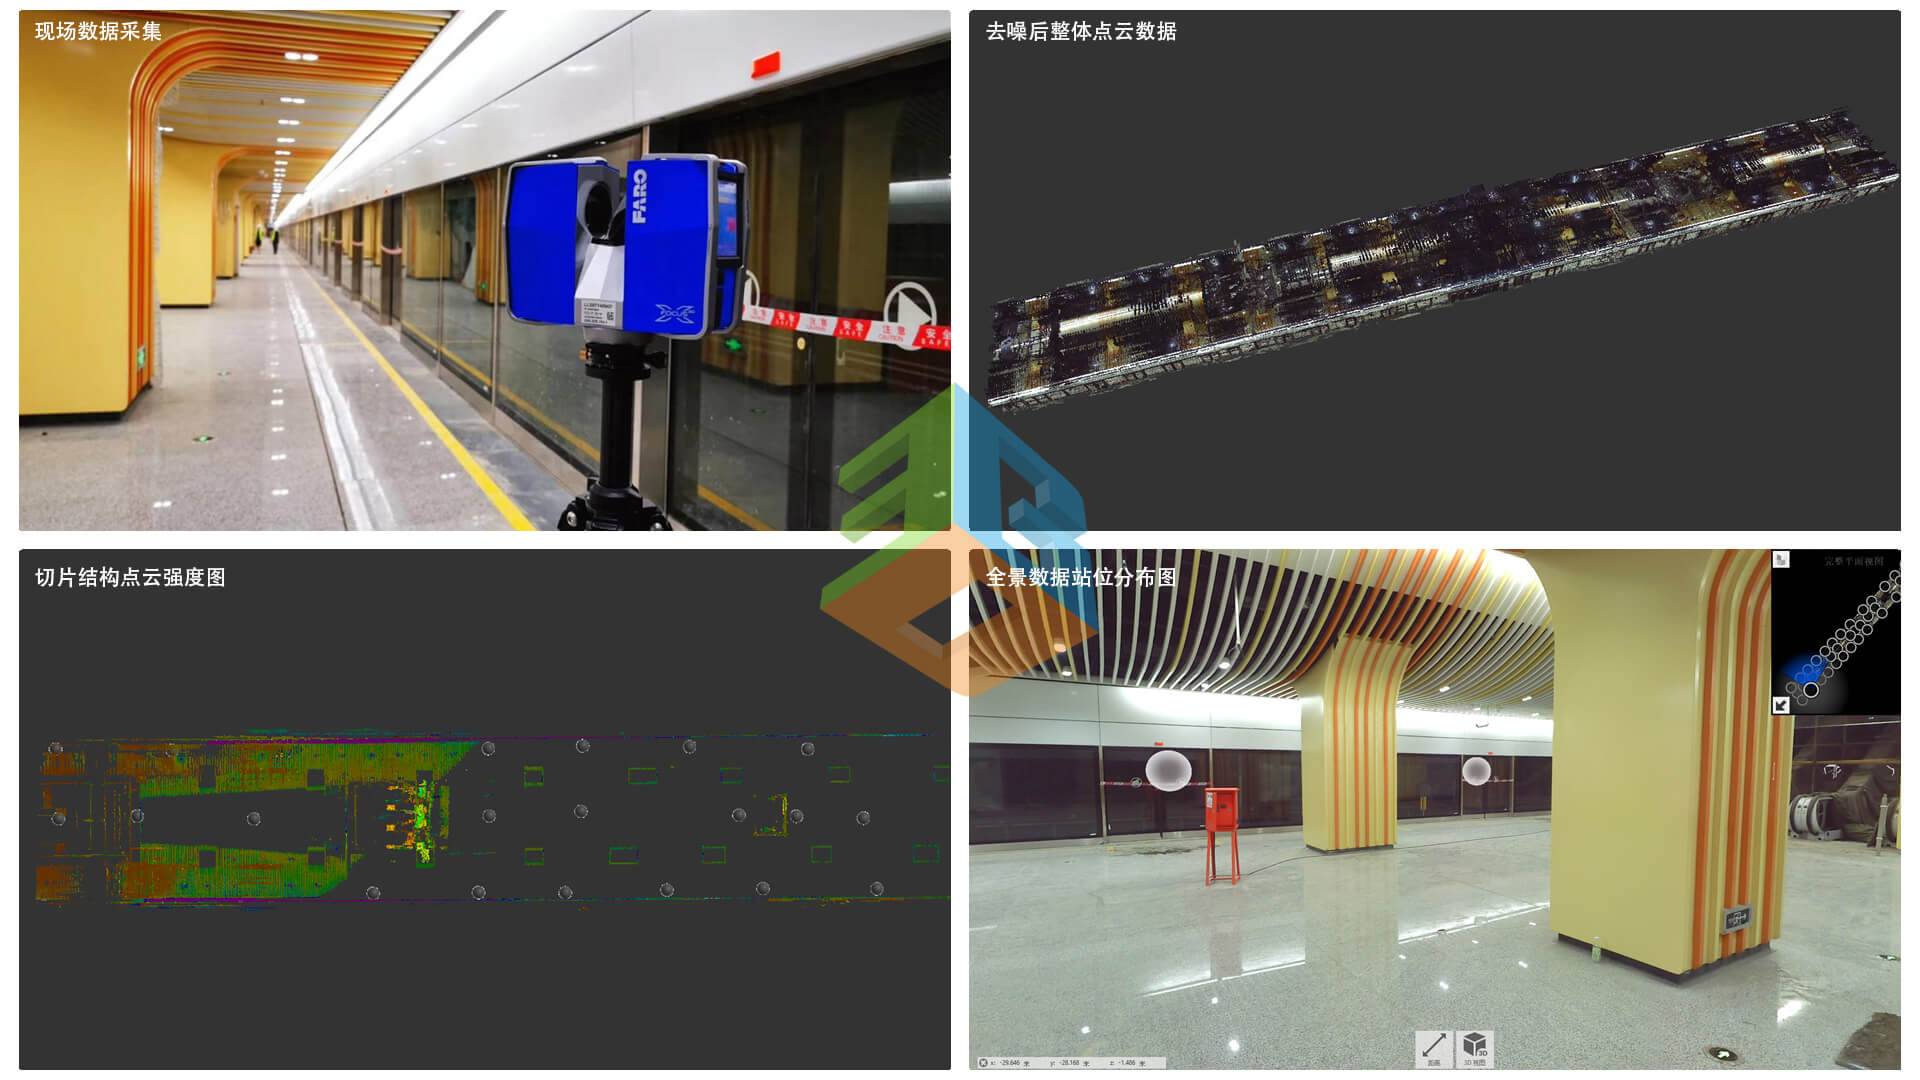 三维激光扫描技术在地铁站中的应用